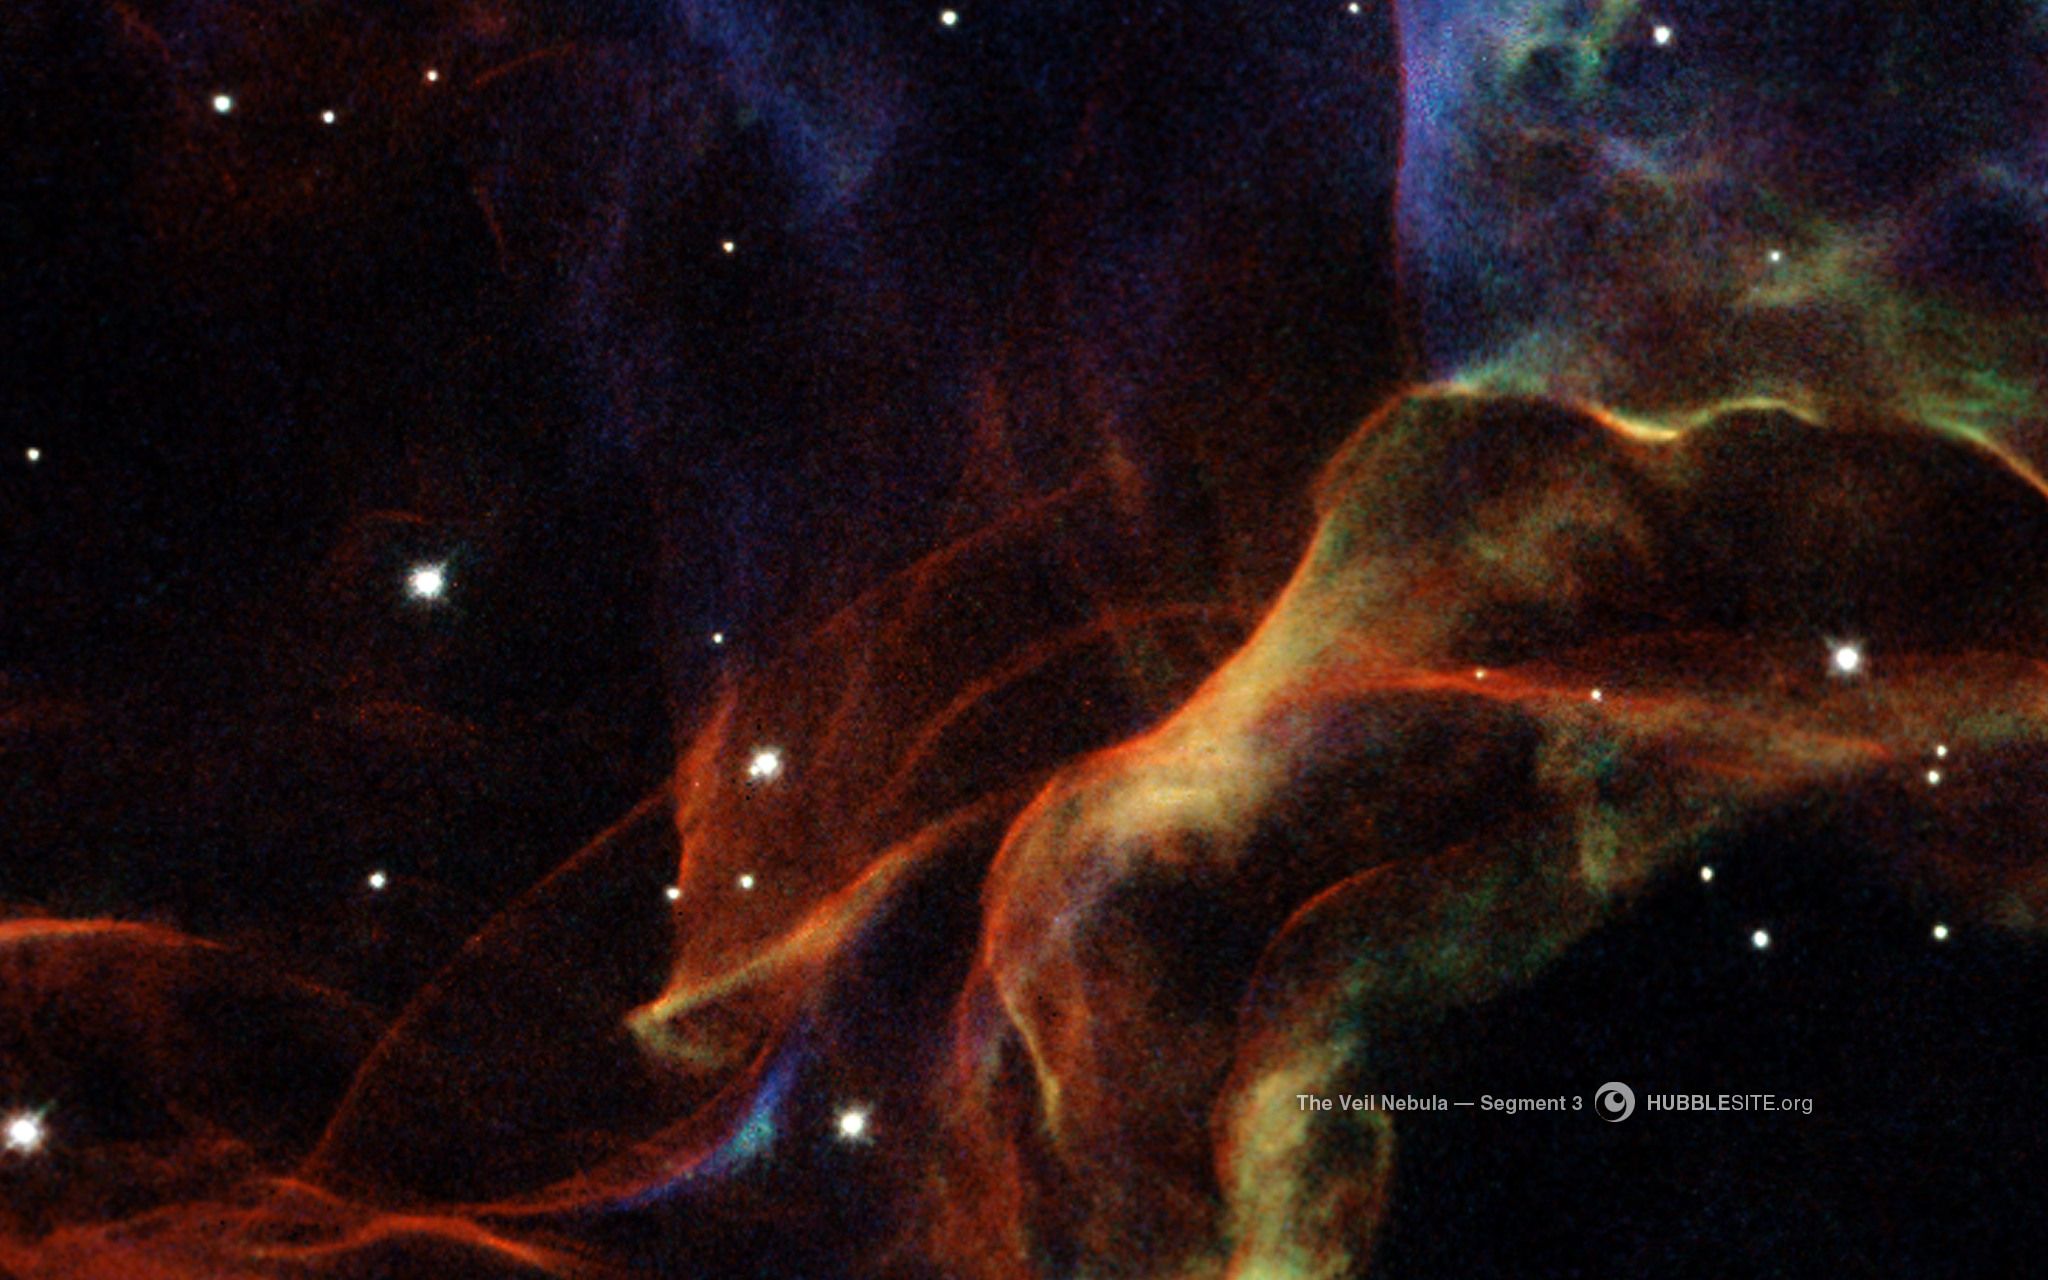 The Veil Nebula, segment 3